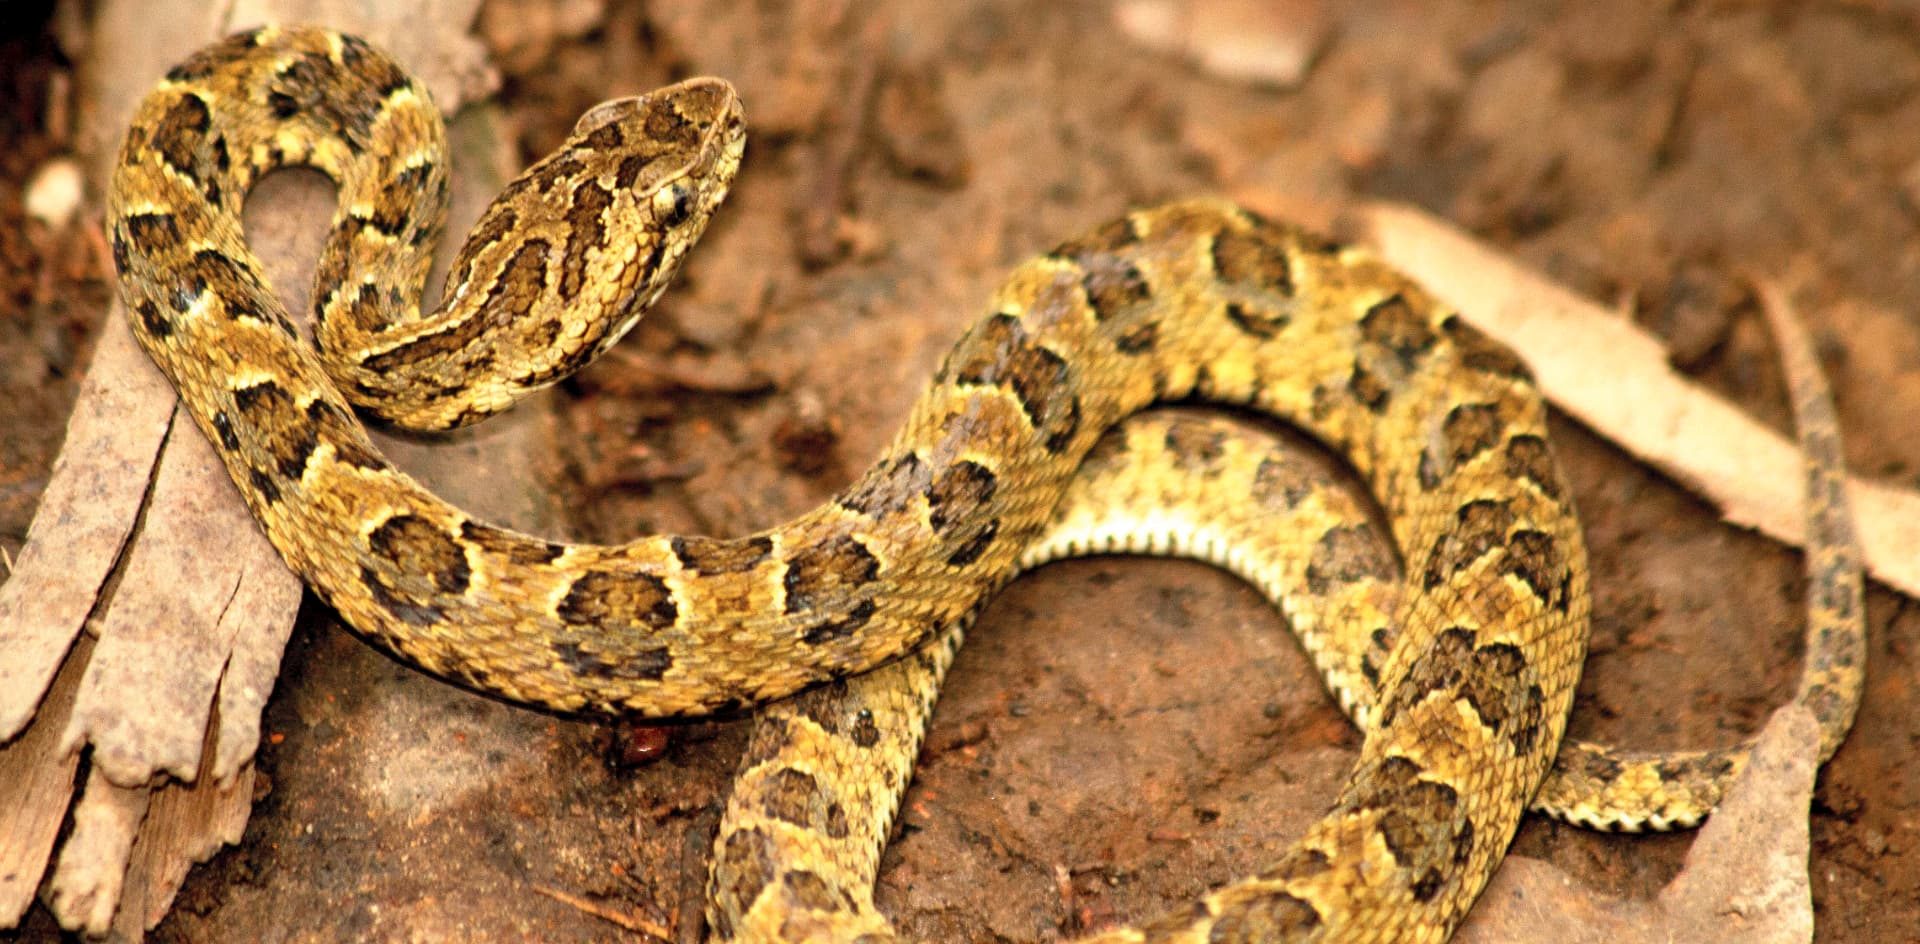 Descubren una nueva especie de serpiente yarará en una reserva natural peruana